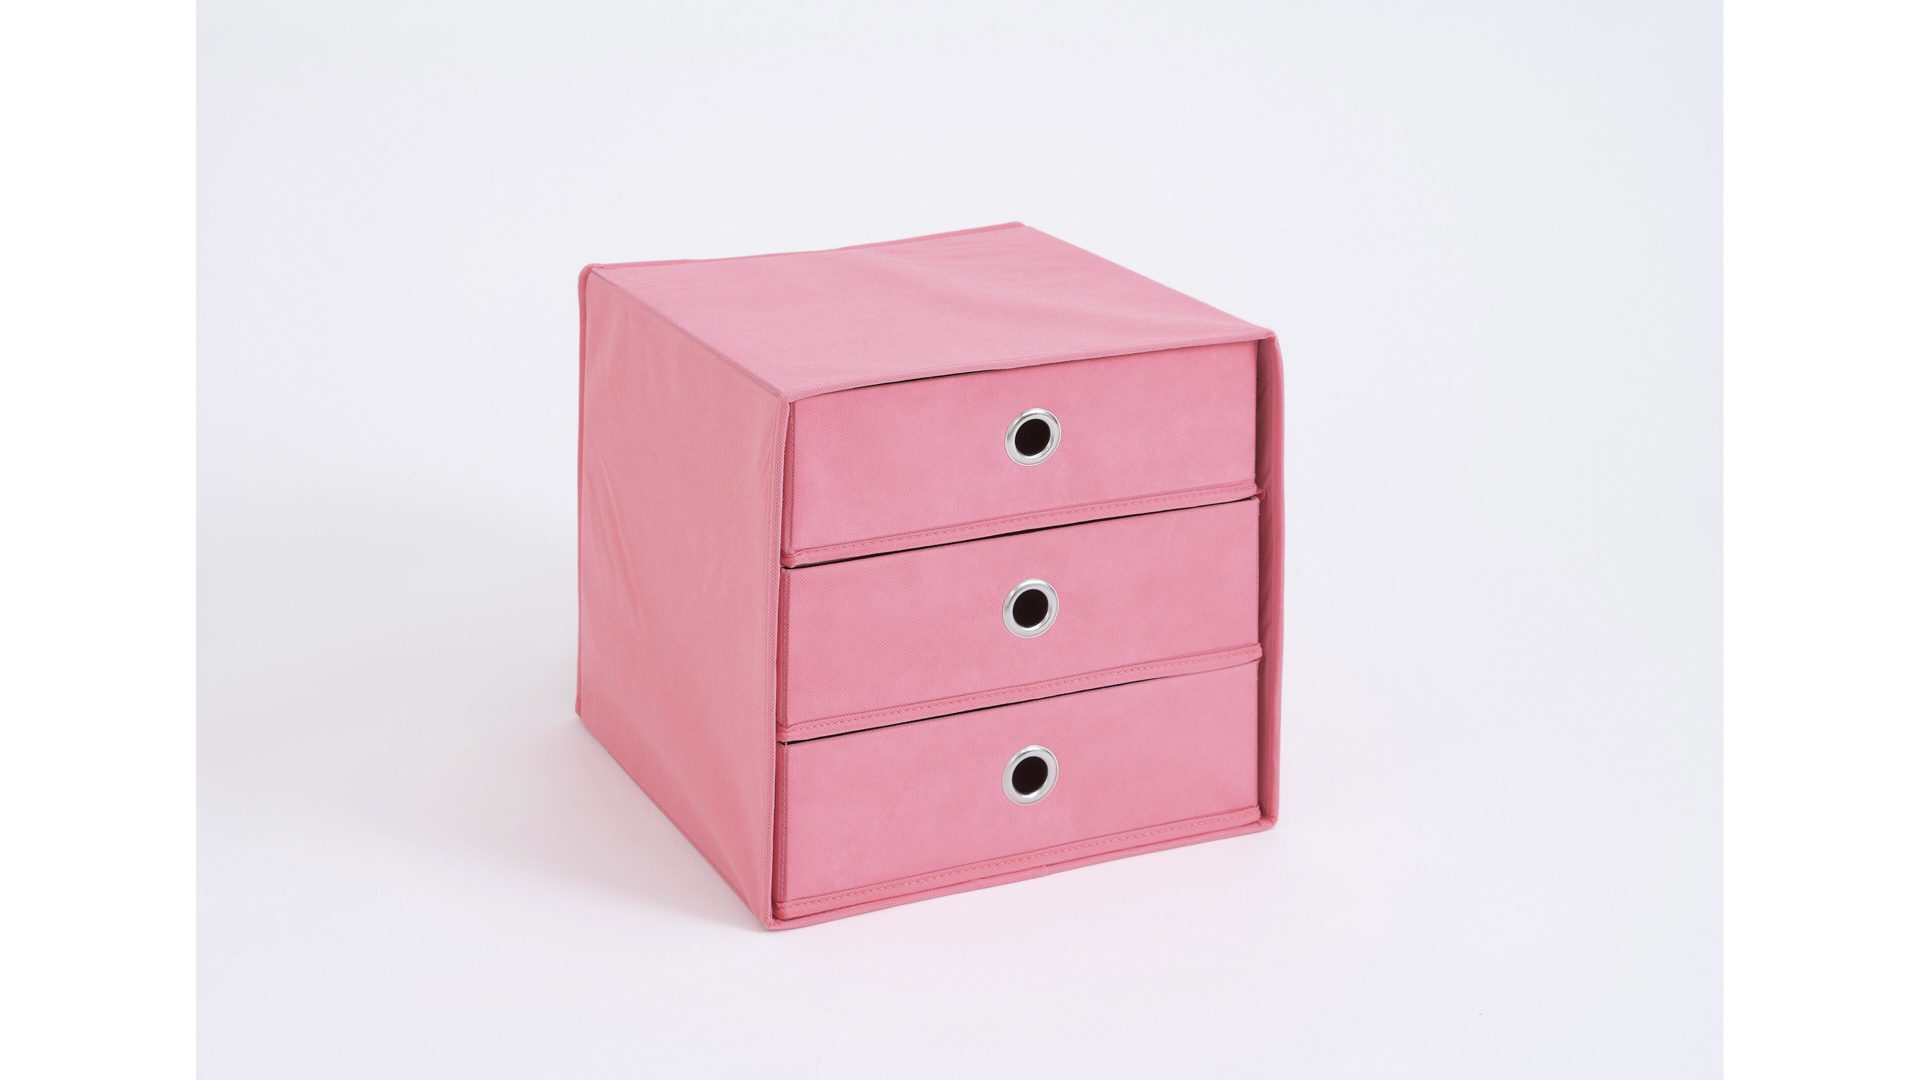 Faltbox Fmd furniture aus Stoff in Pink Faltbox mit drei Schubladen pinkfarbenes, verstärktes Vlies - drei Schubladen, ca. 32 x 32 cm